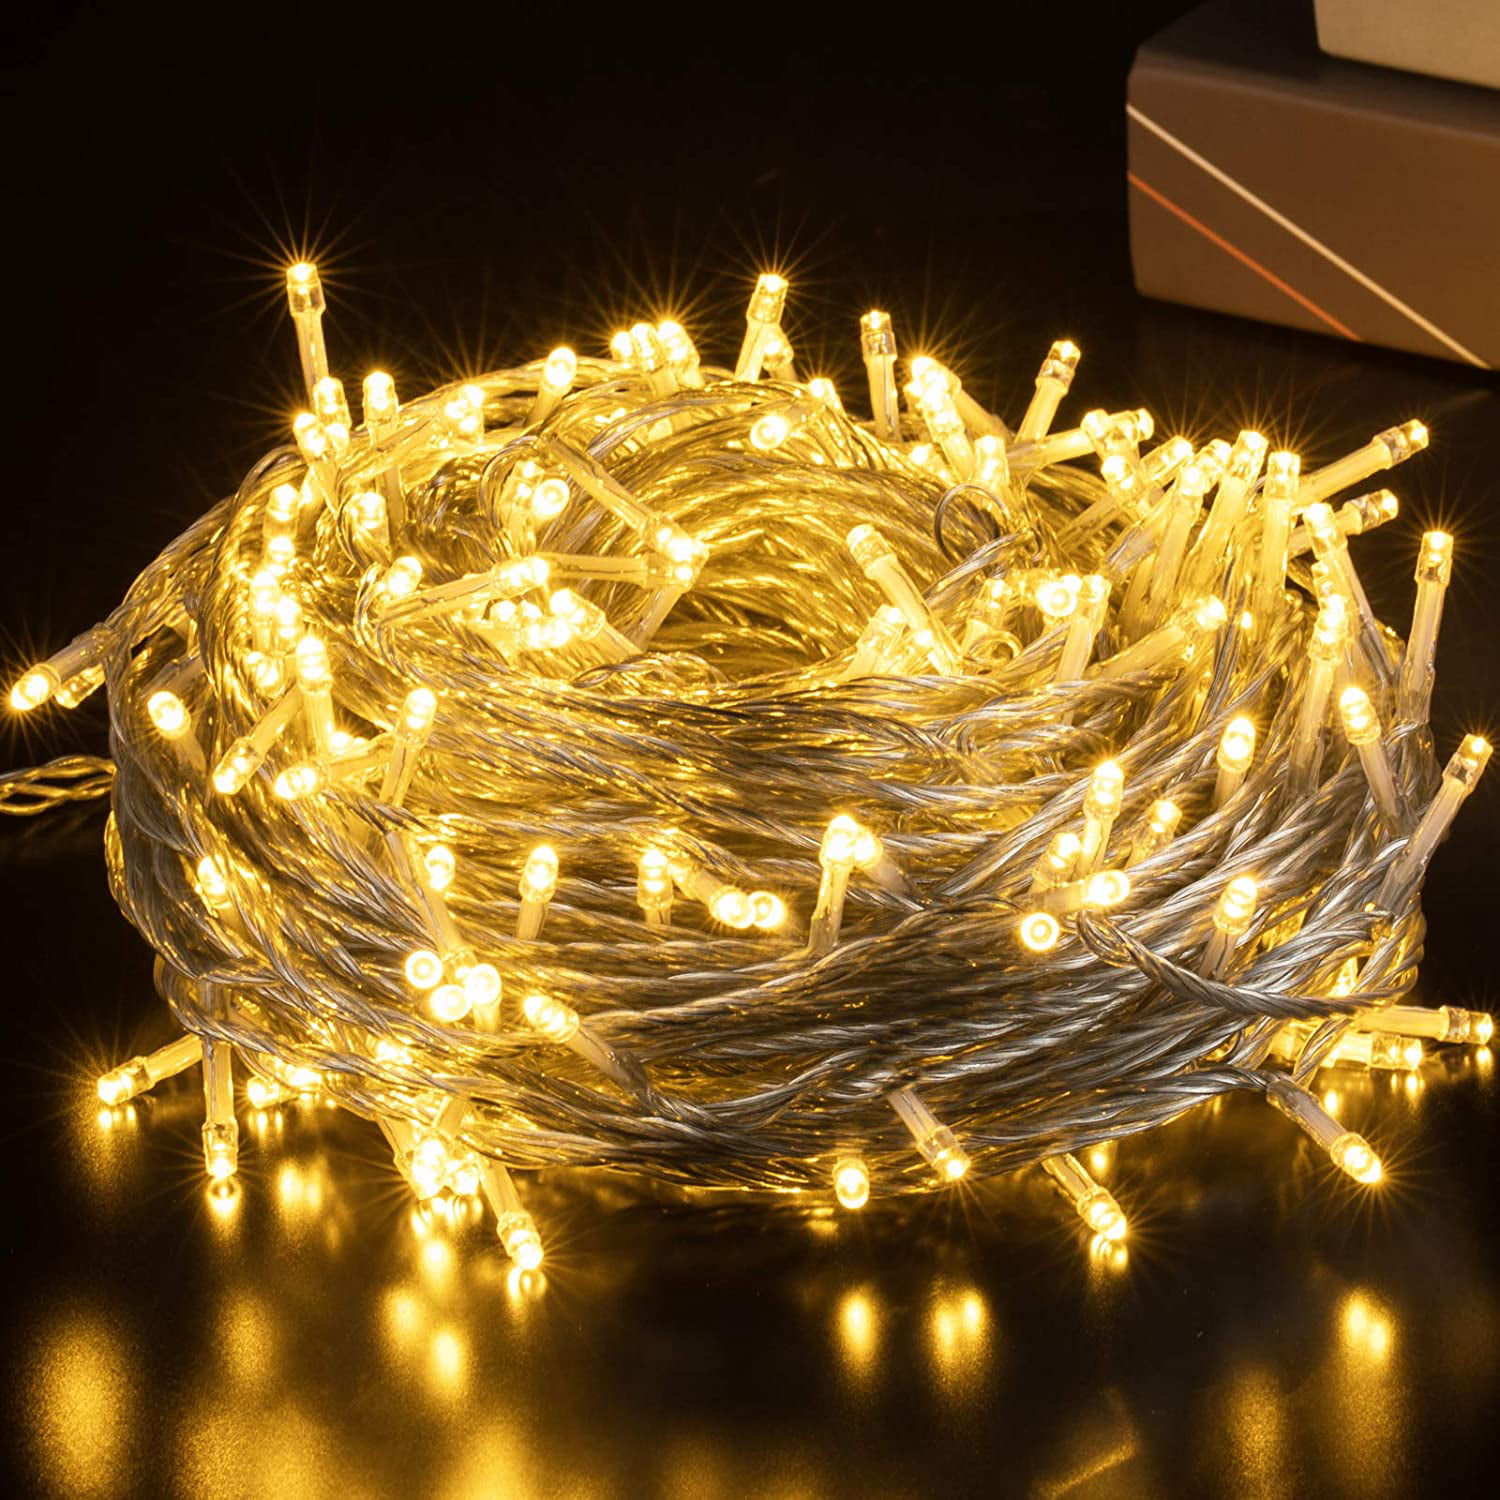 LED String Lights - Decorative String Lights 32FT 100 LEDs Christmas